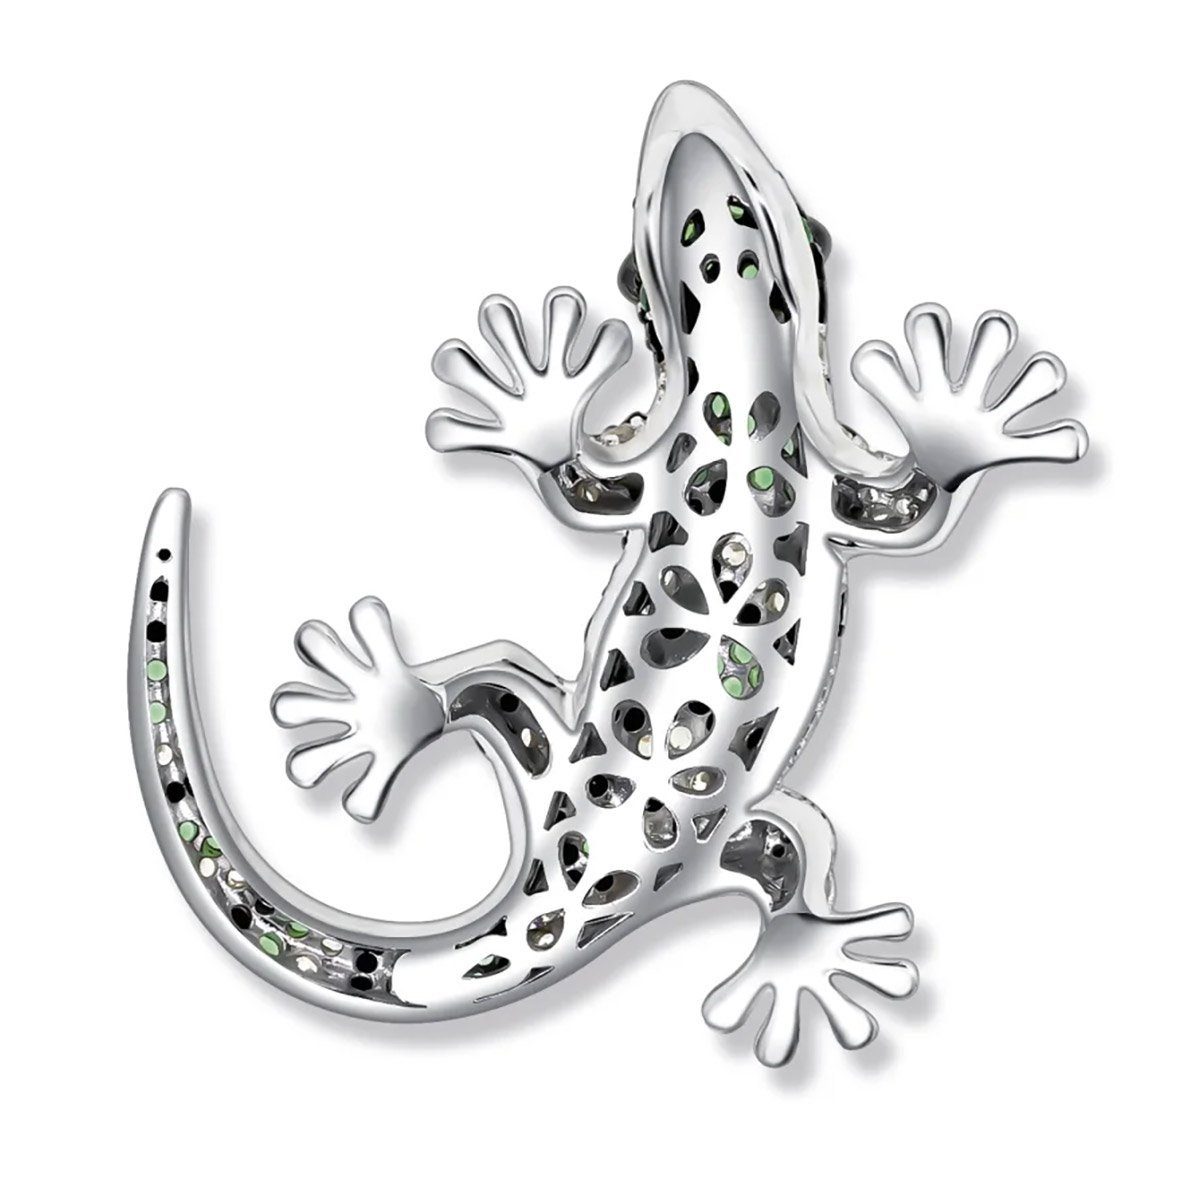 BERLIN SEINERZEIT Salamander Kettenanhänger Silber Speedy - 925